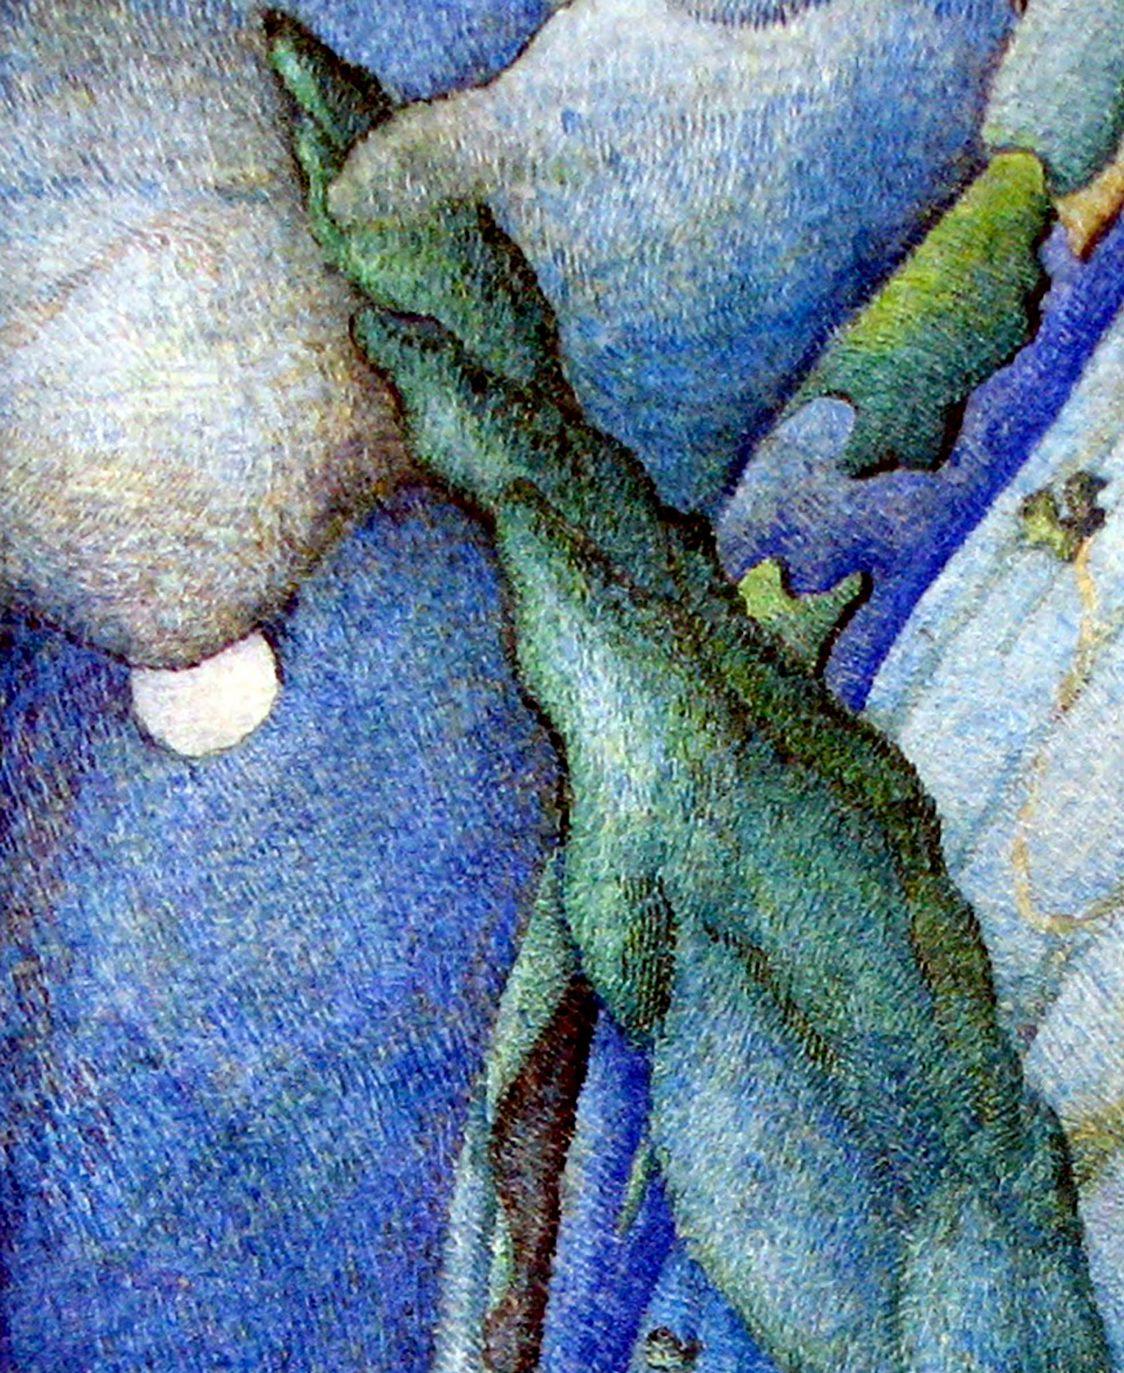 Artiste : Varvarov Anatoly Viktorovich
Titre : Cœur de peuplier,
Taille : 7.5x5.5 inches, (19x14 cm)
Support : Aquarelle Papier,
Peint à la main, original, unique en son genre, prêt à être accroché


En regardant 